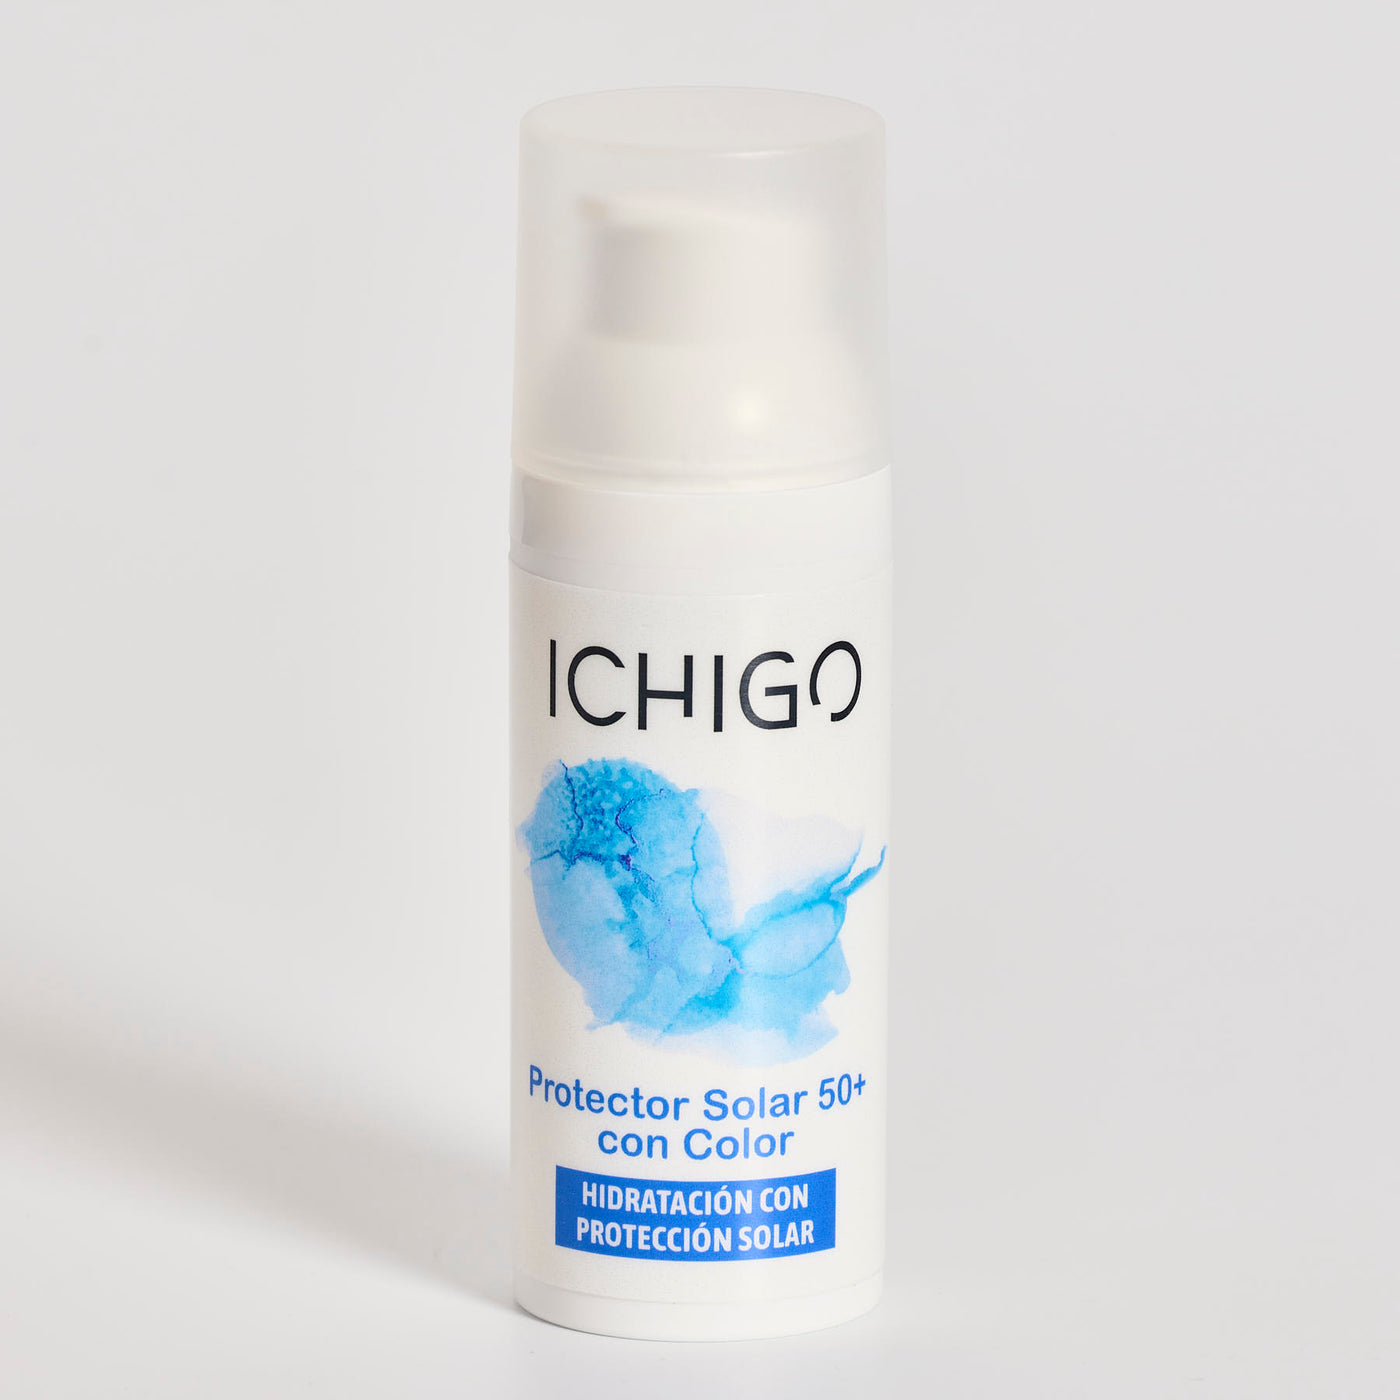 ICHIGO Protección Solar 50+ con Color - Hidratación con Protección Solar